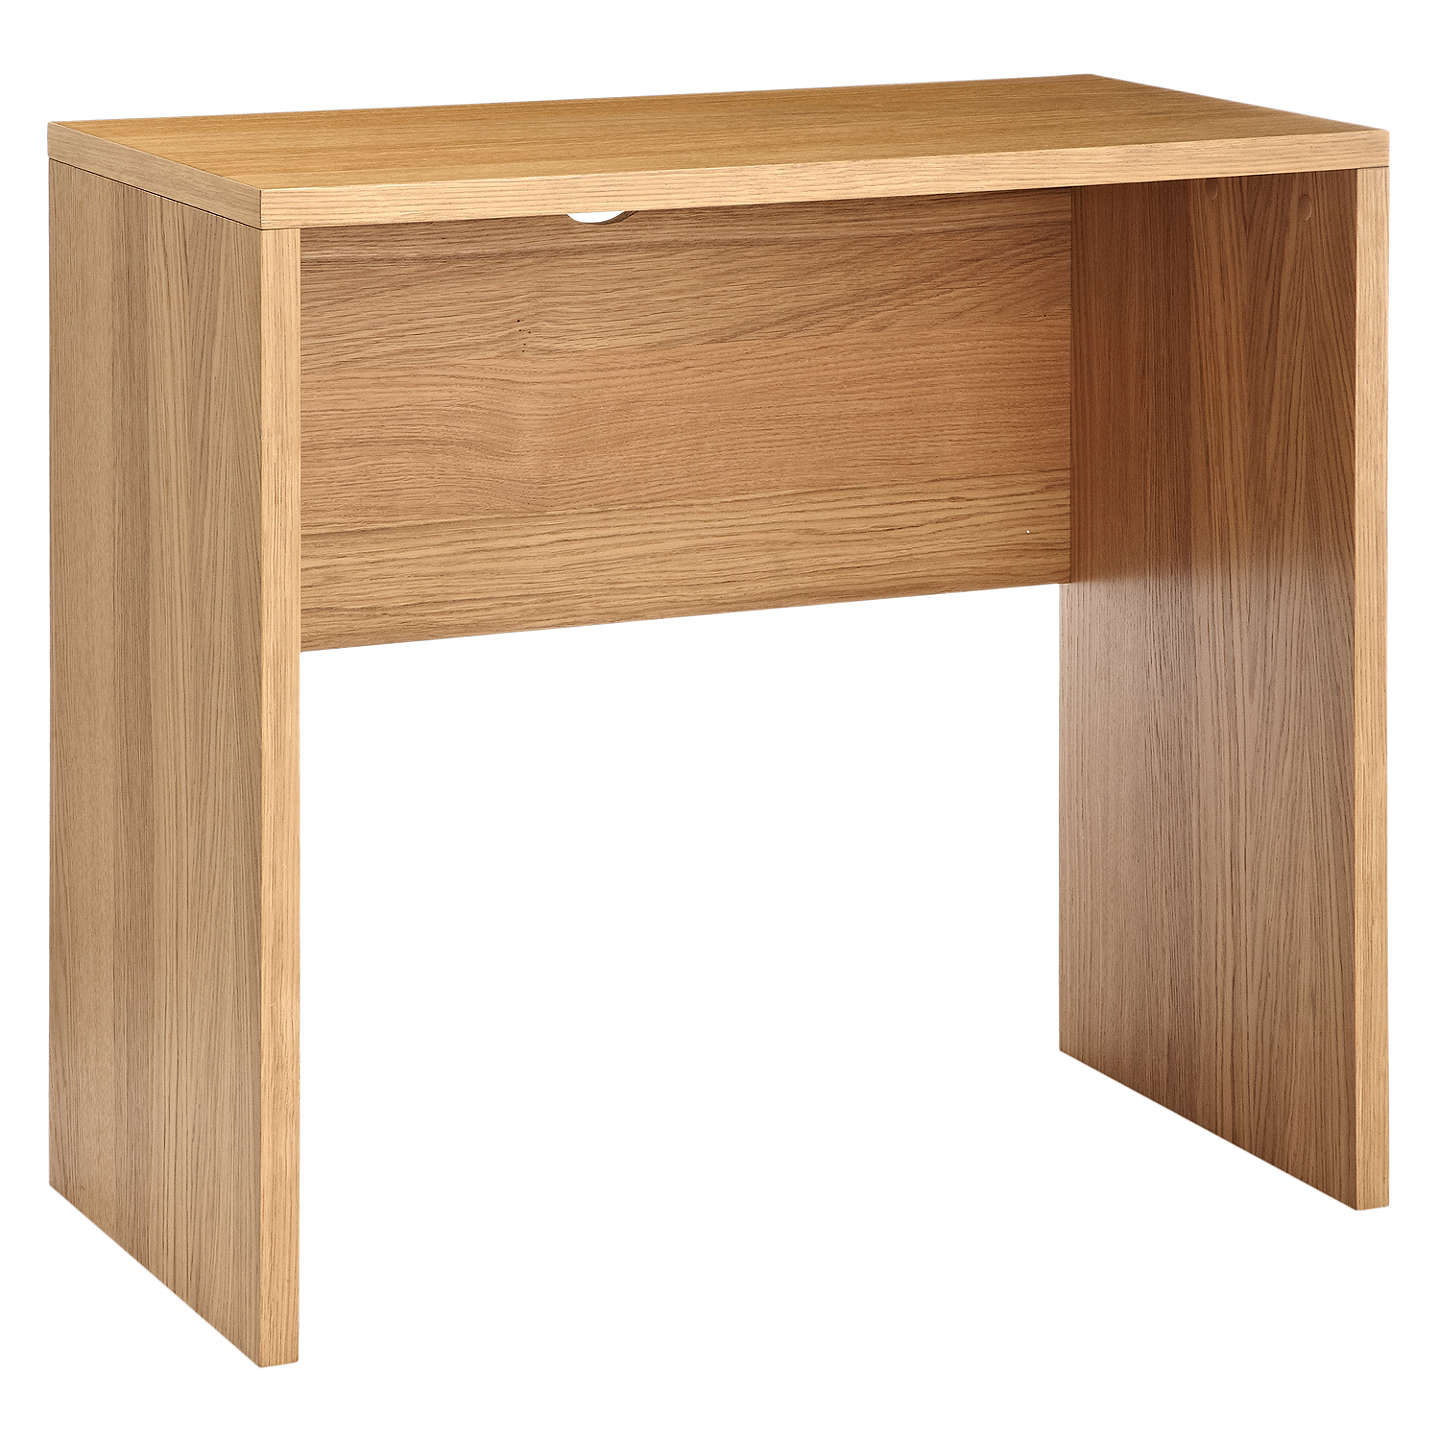 fsc abakus small desk, fsc-certified, oak buy online at johnlewis.com ... YZLQIOE